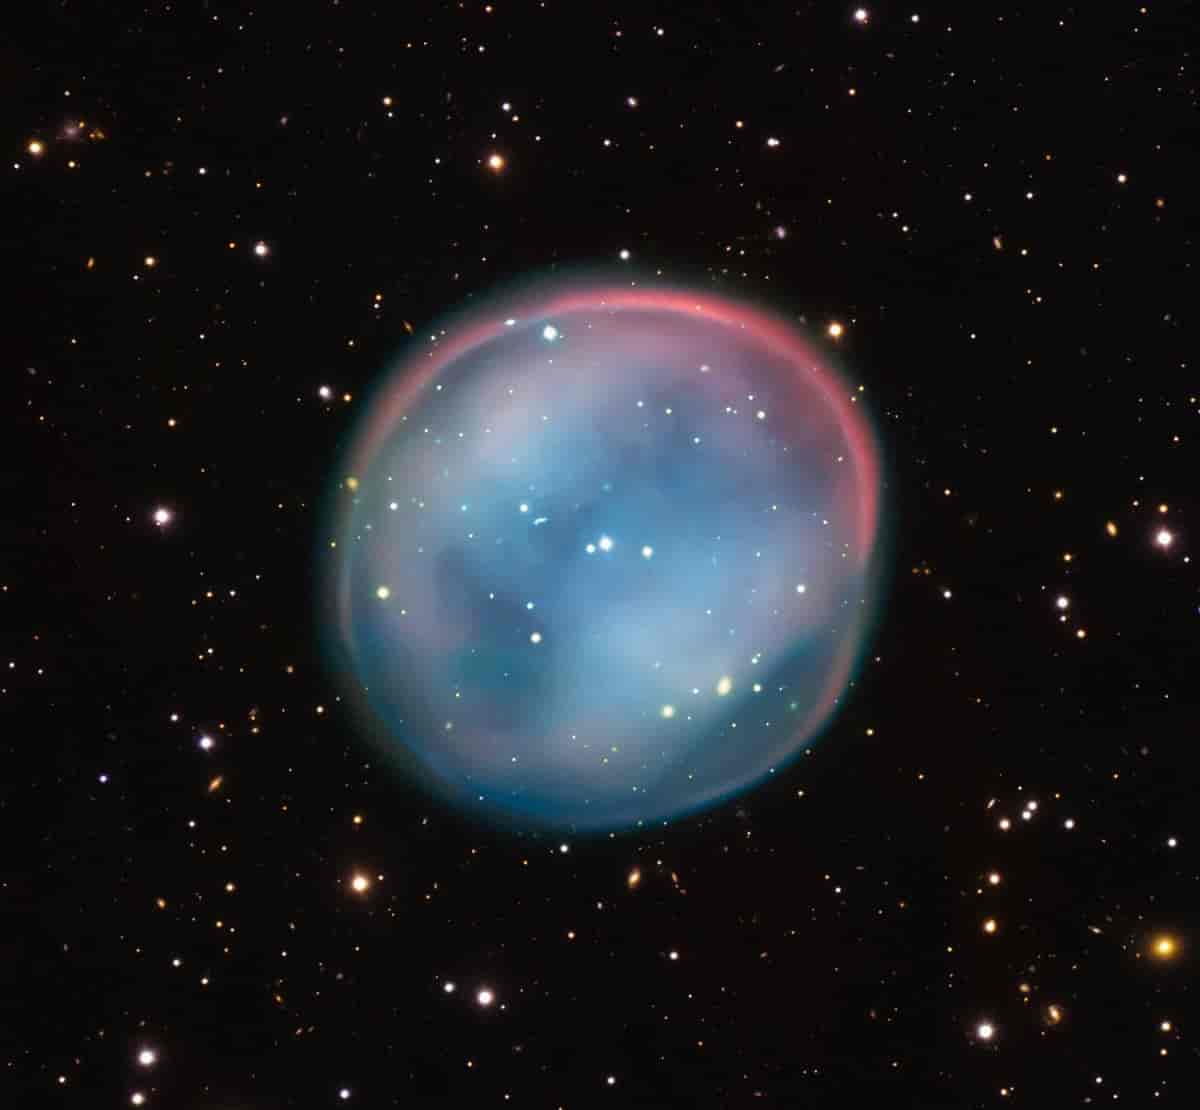 ESO 378-1